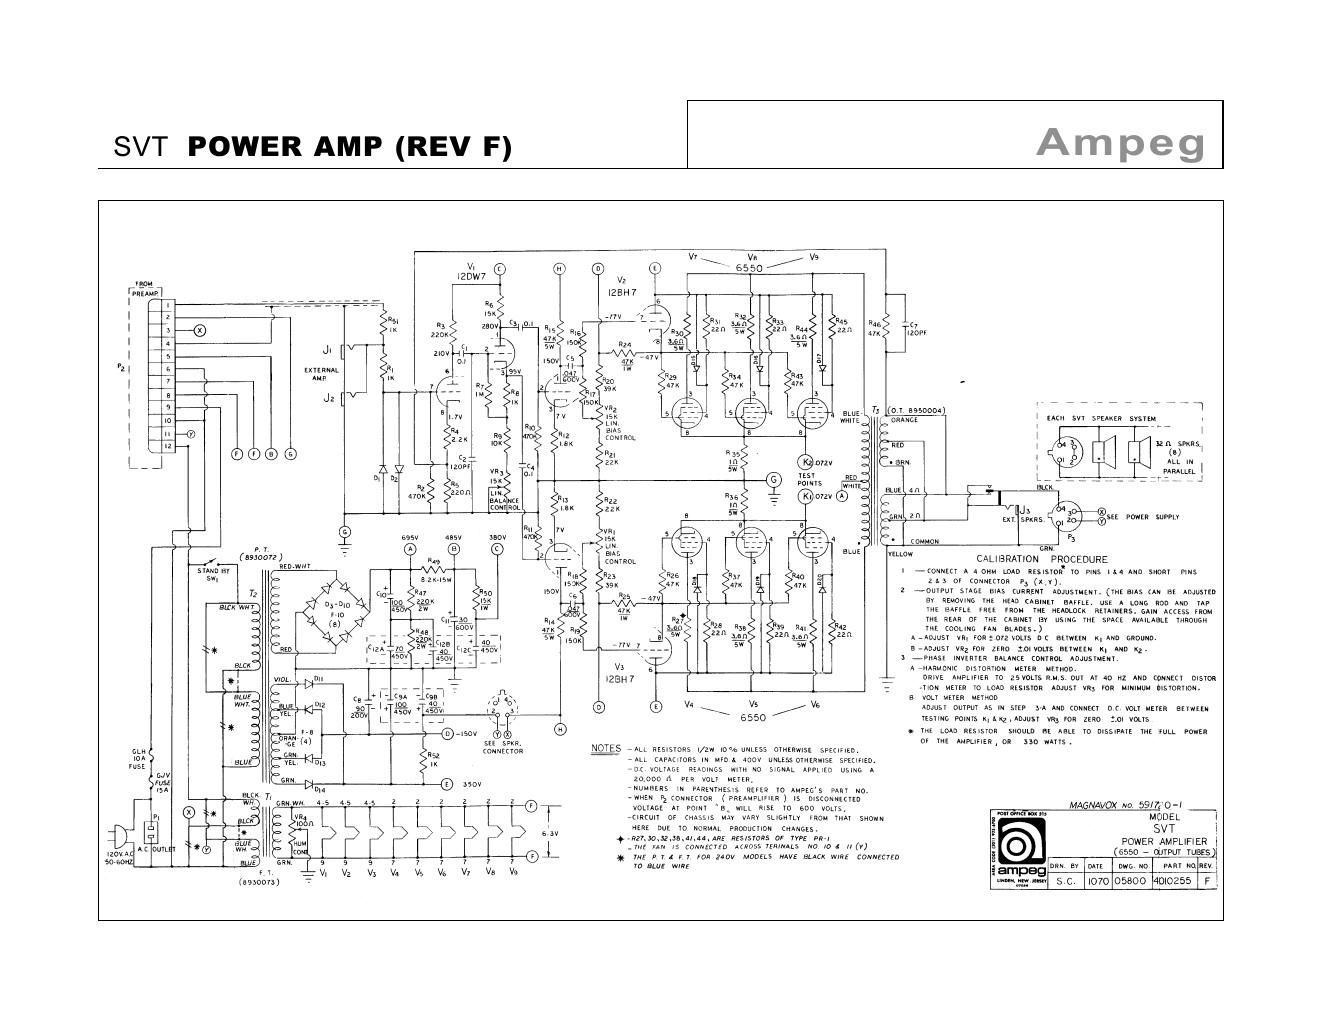 ampeg svt power amp rev f schematic